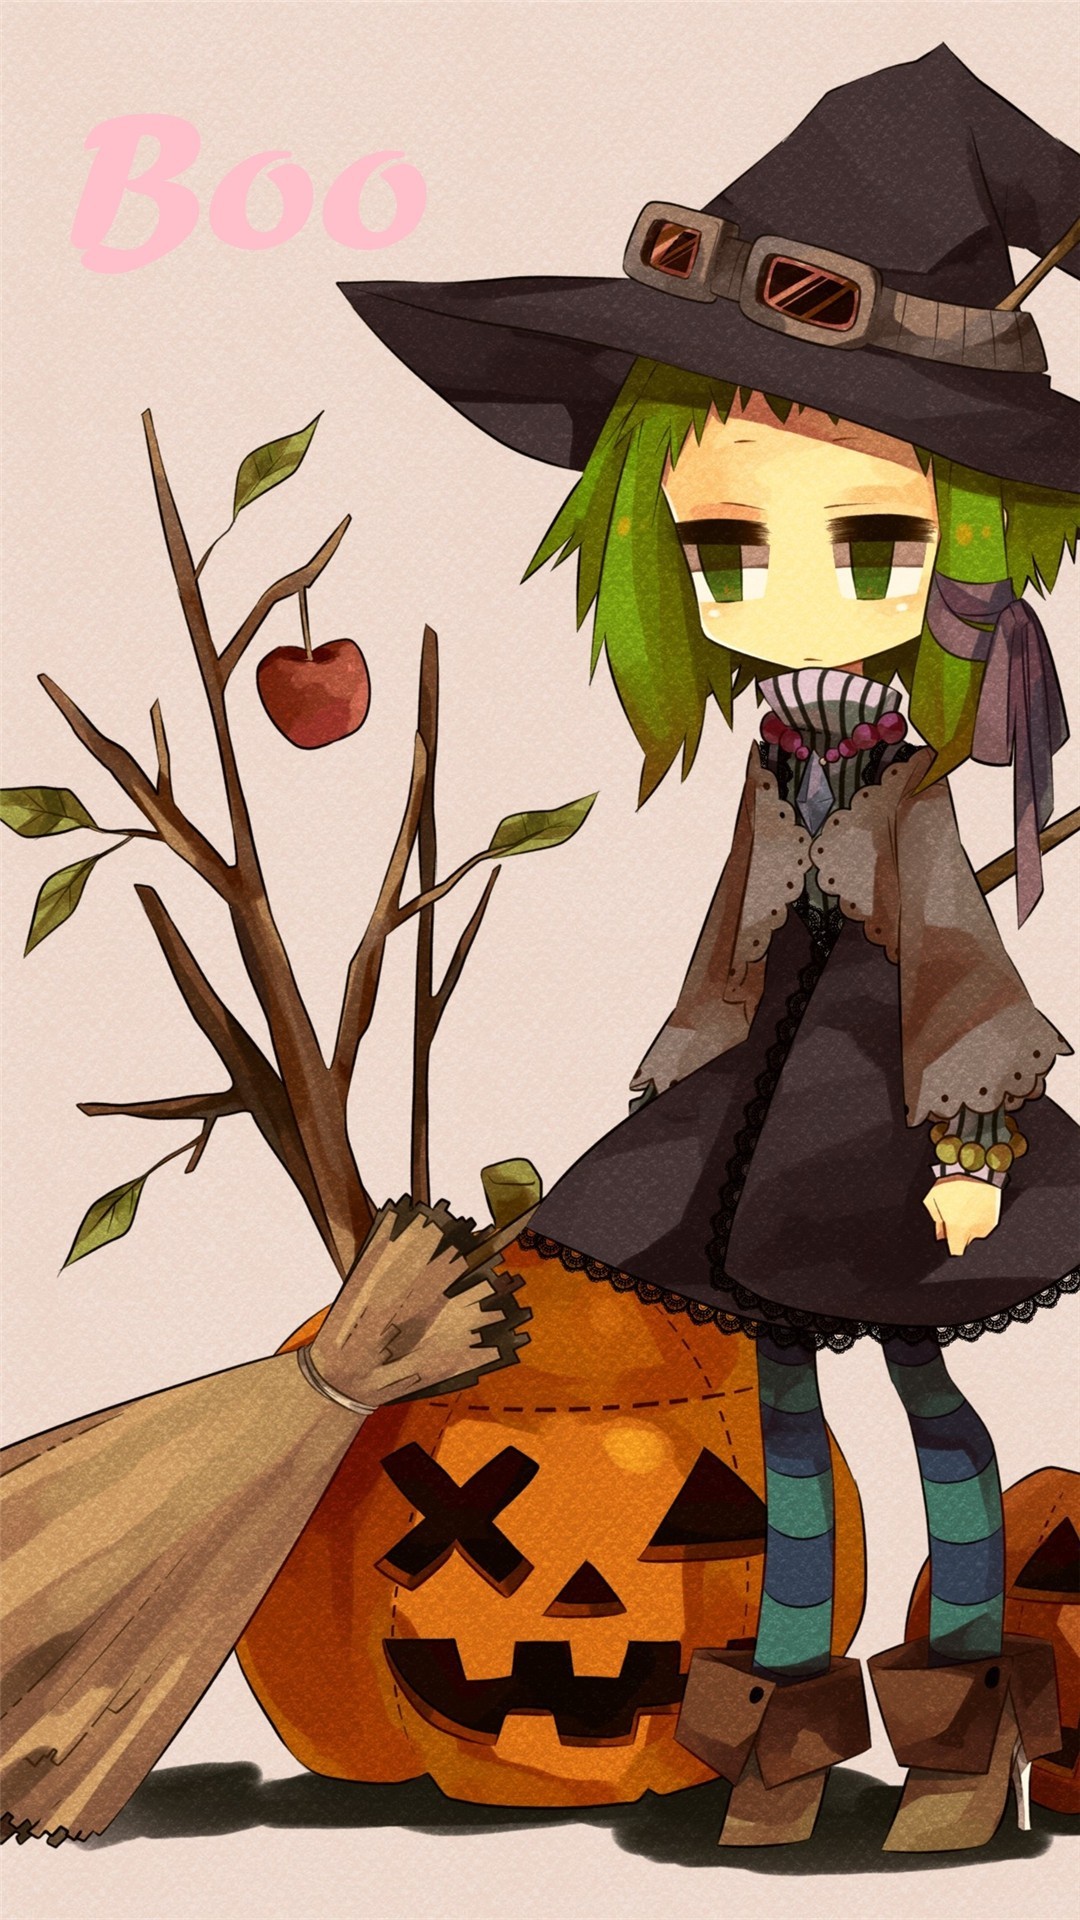 1080x1920 2014 Halloween BOO iPhone 6 plus wallpapers - girl, witch hat, broom,  pumpkin